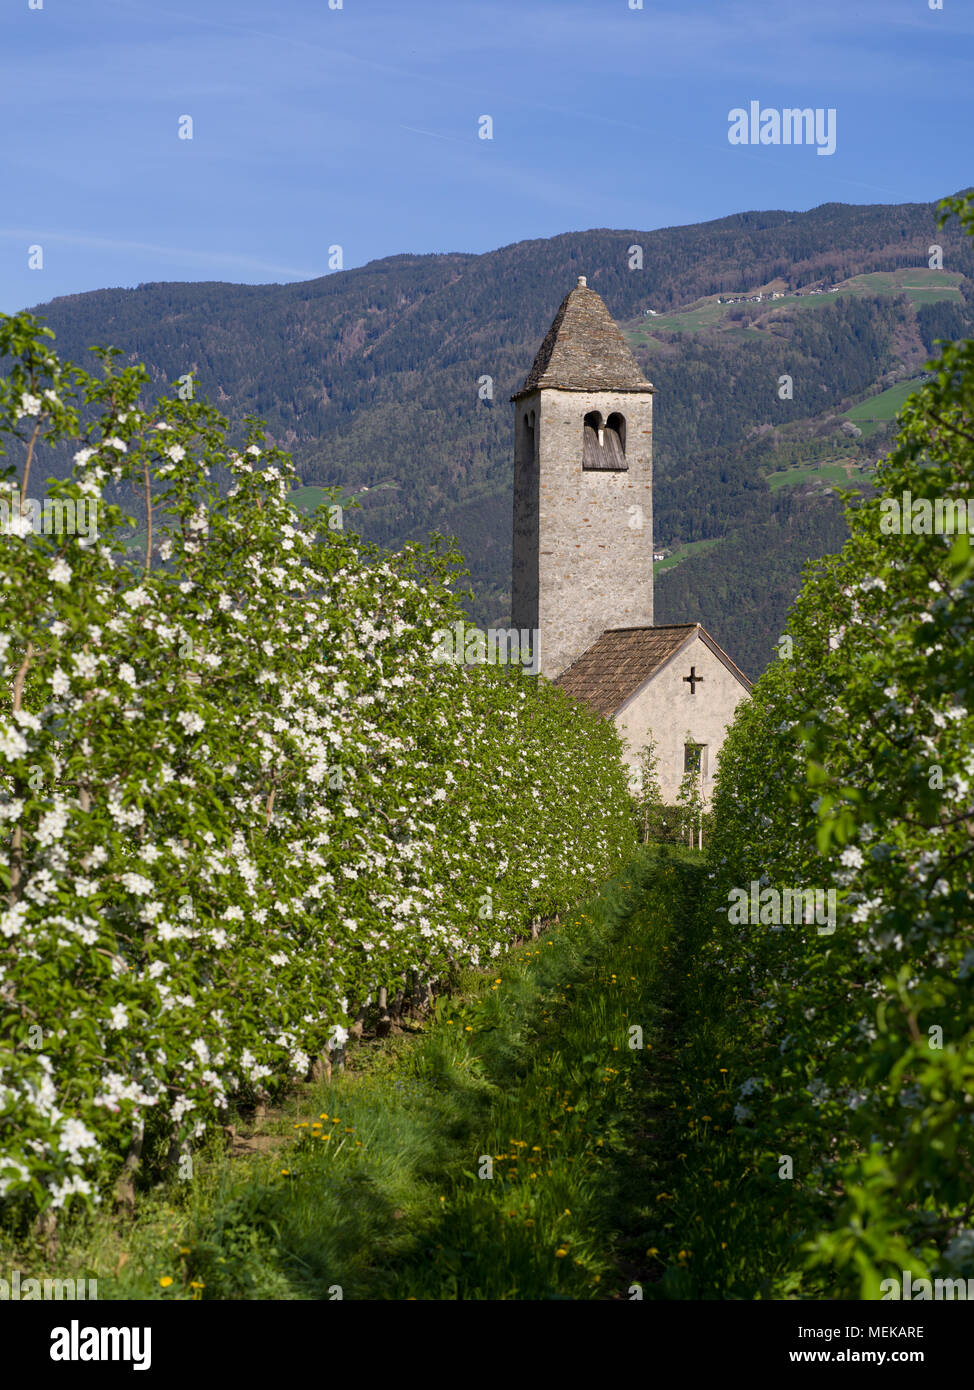 Vieille église dans le champ de pommiers en fleurs dans l'Alto Adige, Italie Banque D'Images